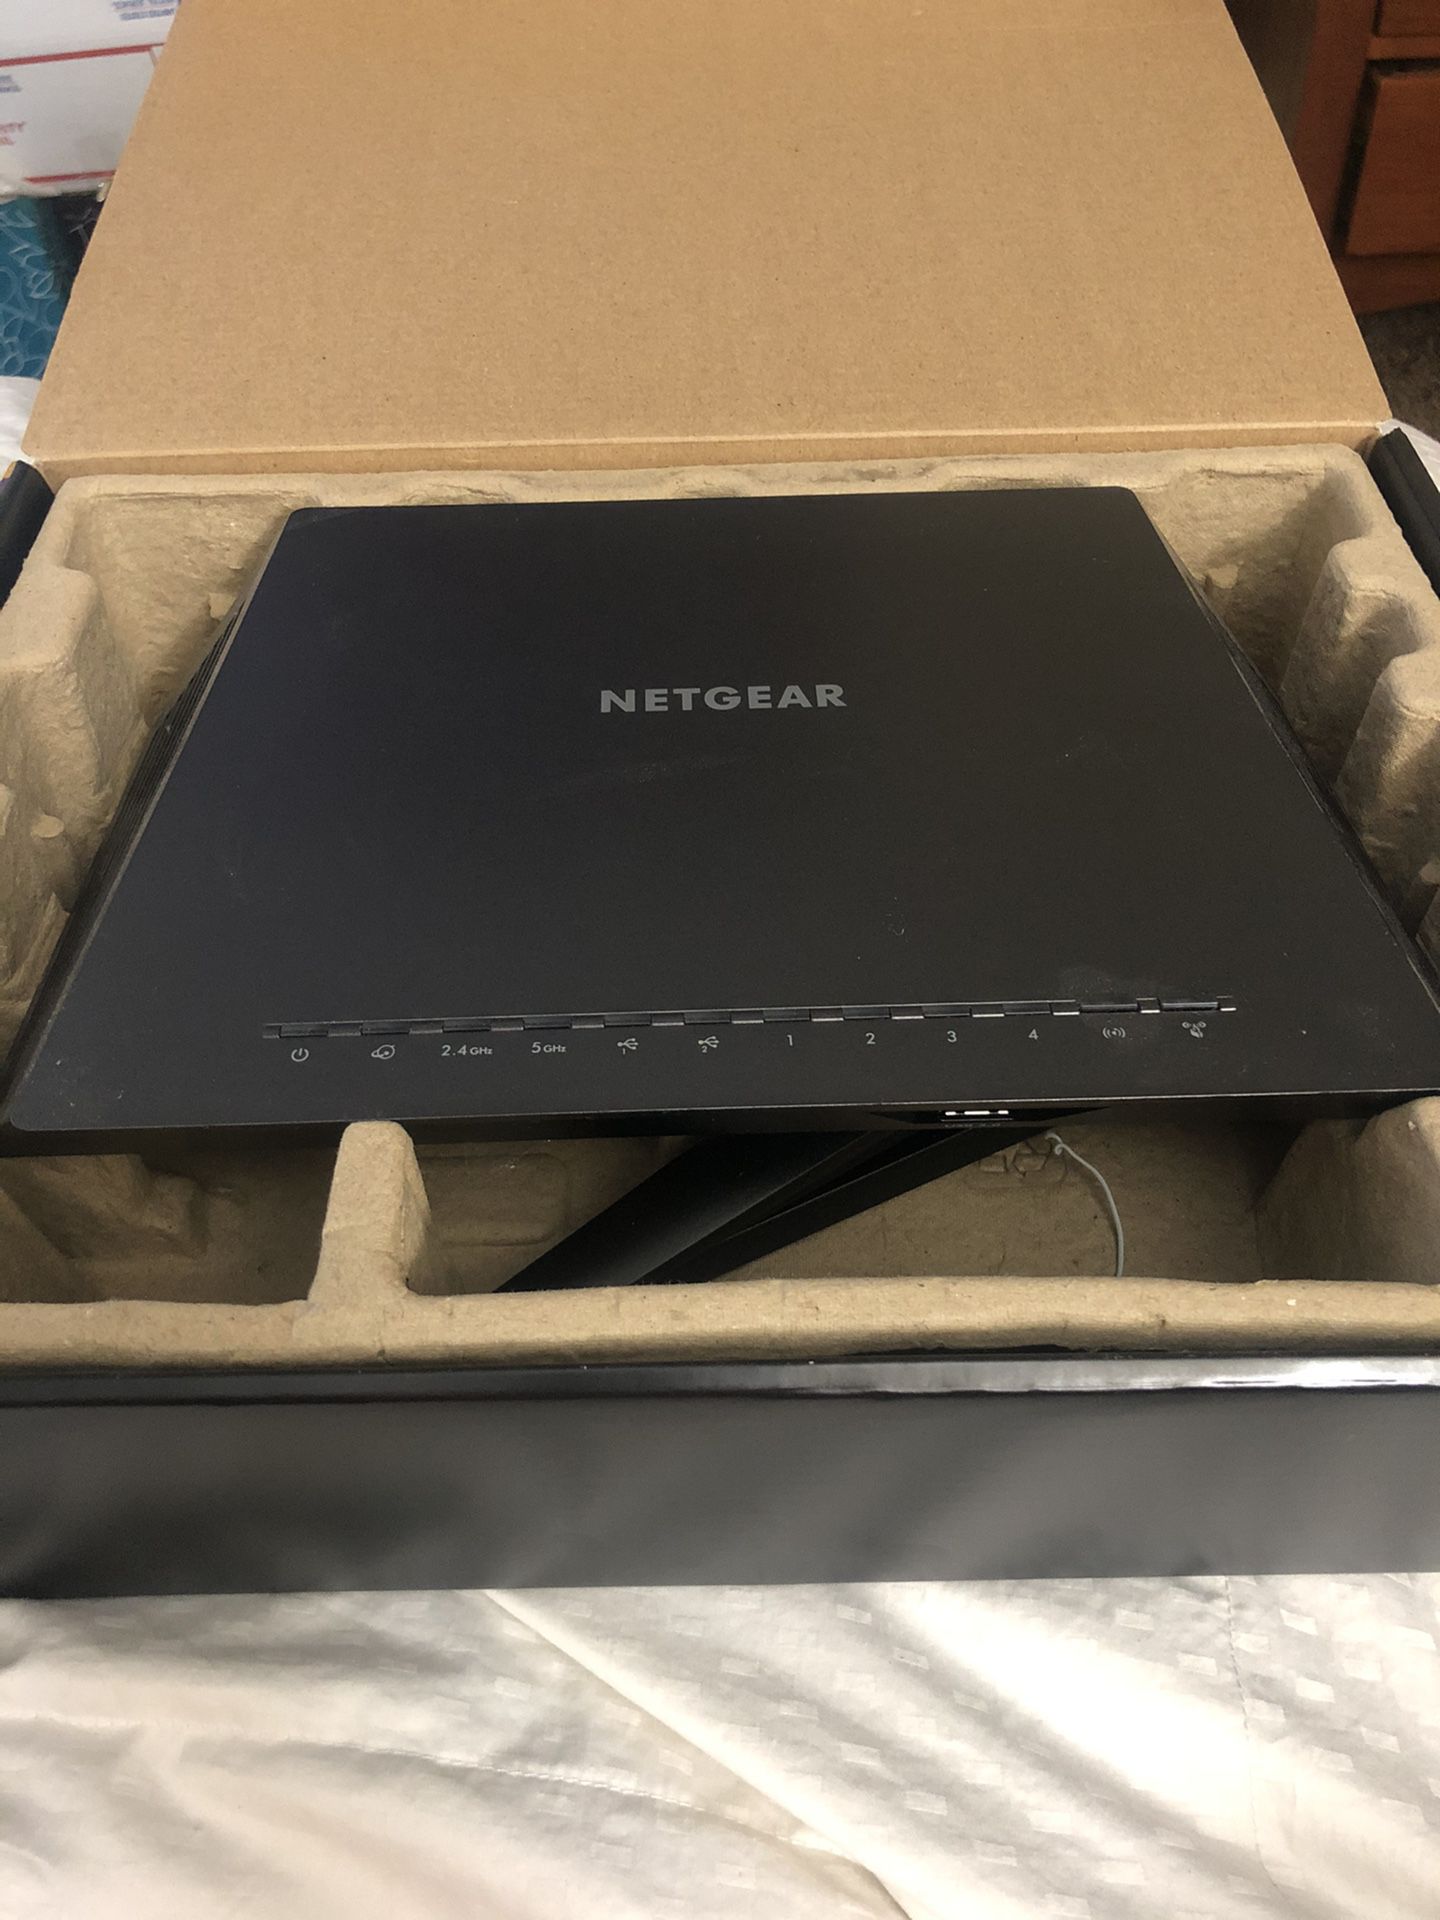 Netgear Nighthawk R7000 AC1900 Smart WiFi Router